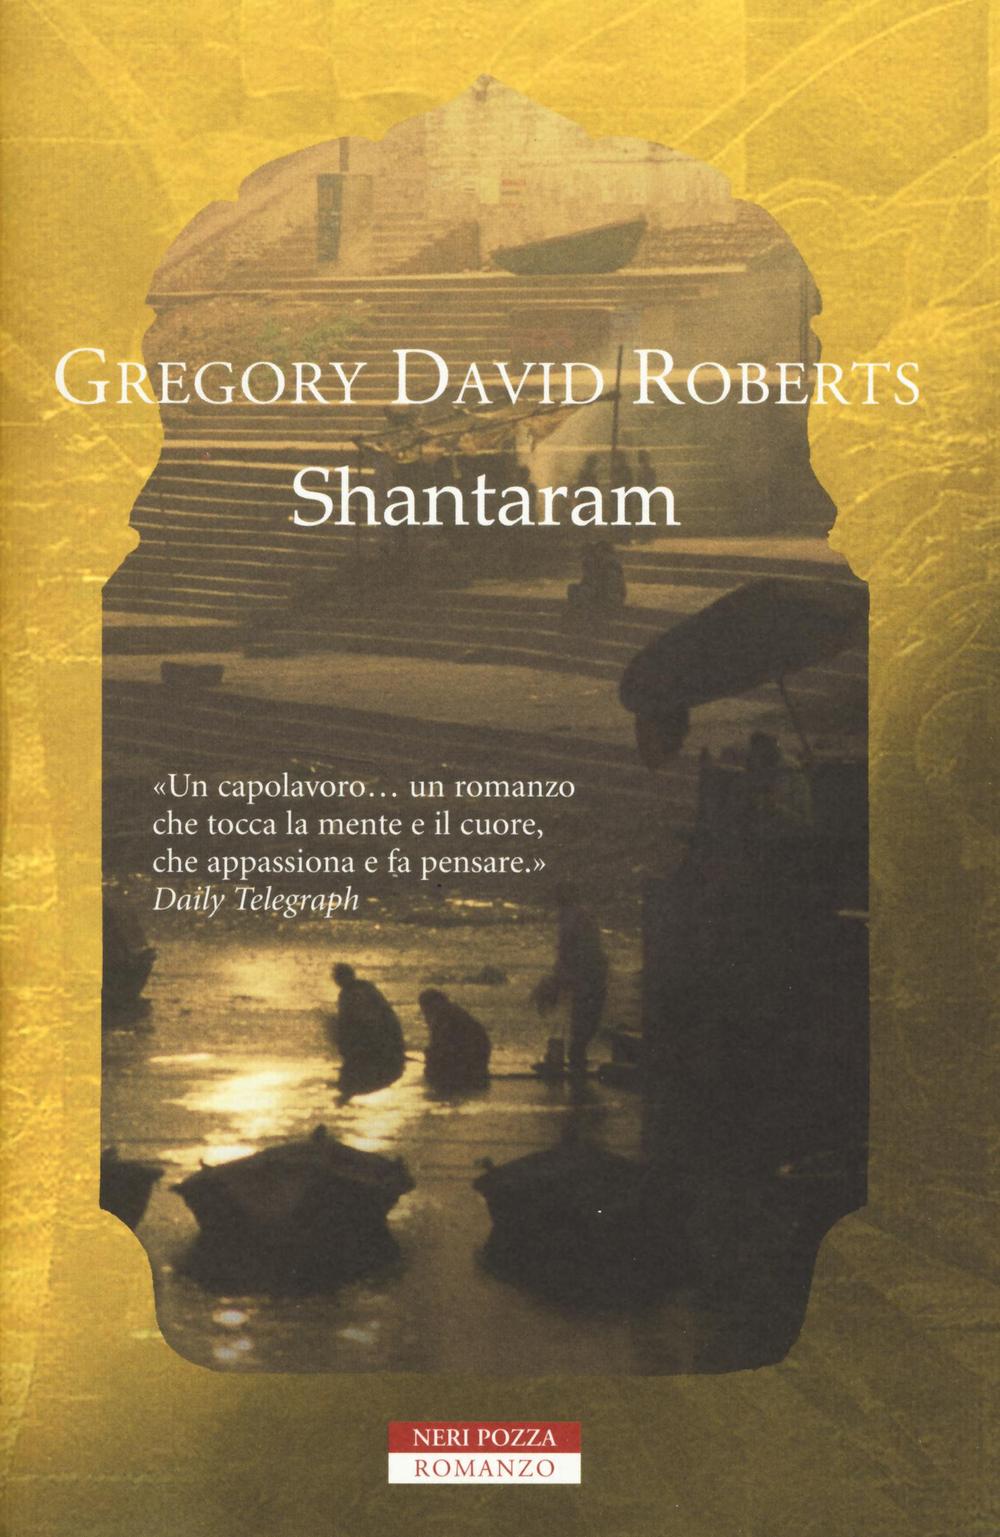 Libri Roberts Gregory David - Shantaram NUOVO SIGILLATO, EDIZIONE DEL 01/12/2016 SUBITO DISPONIBILE